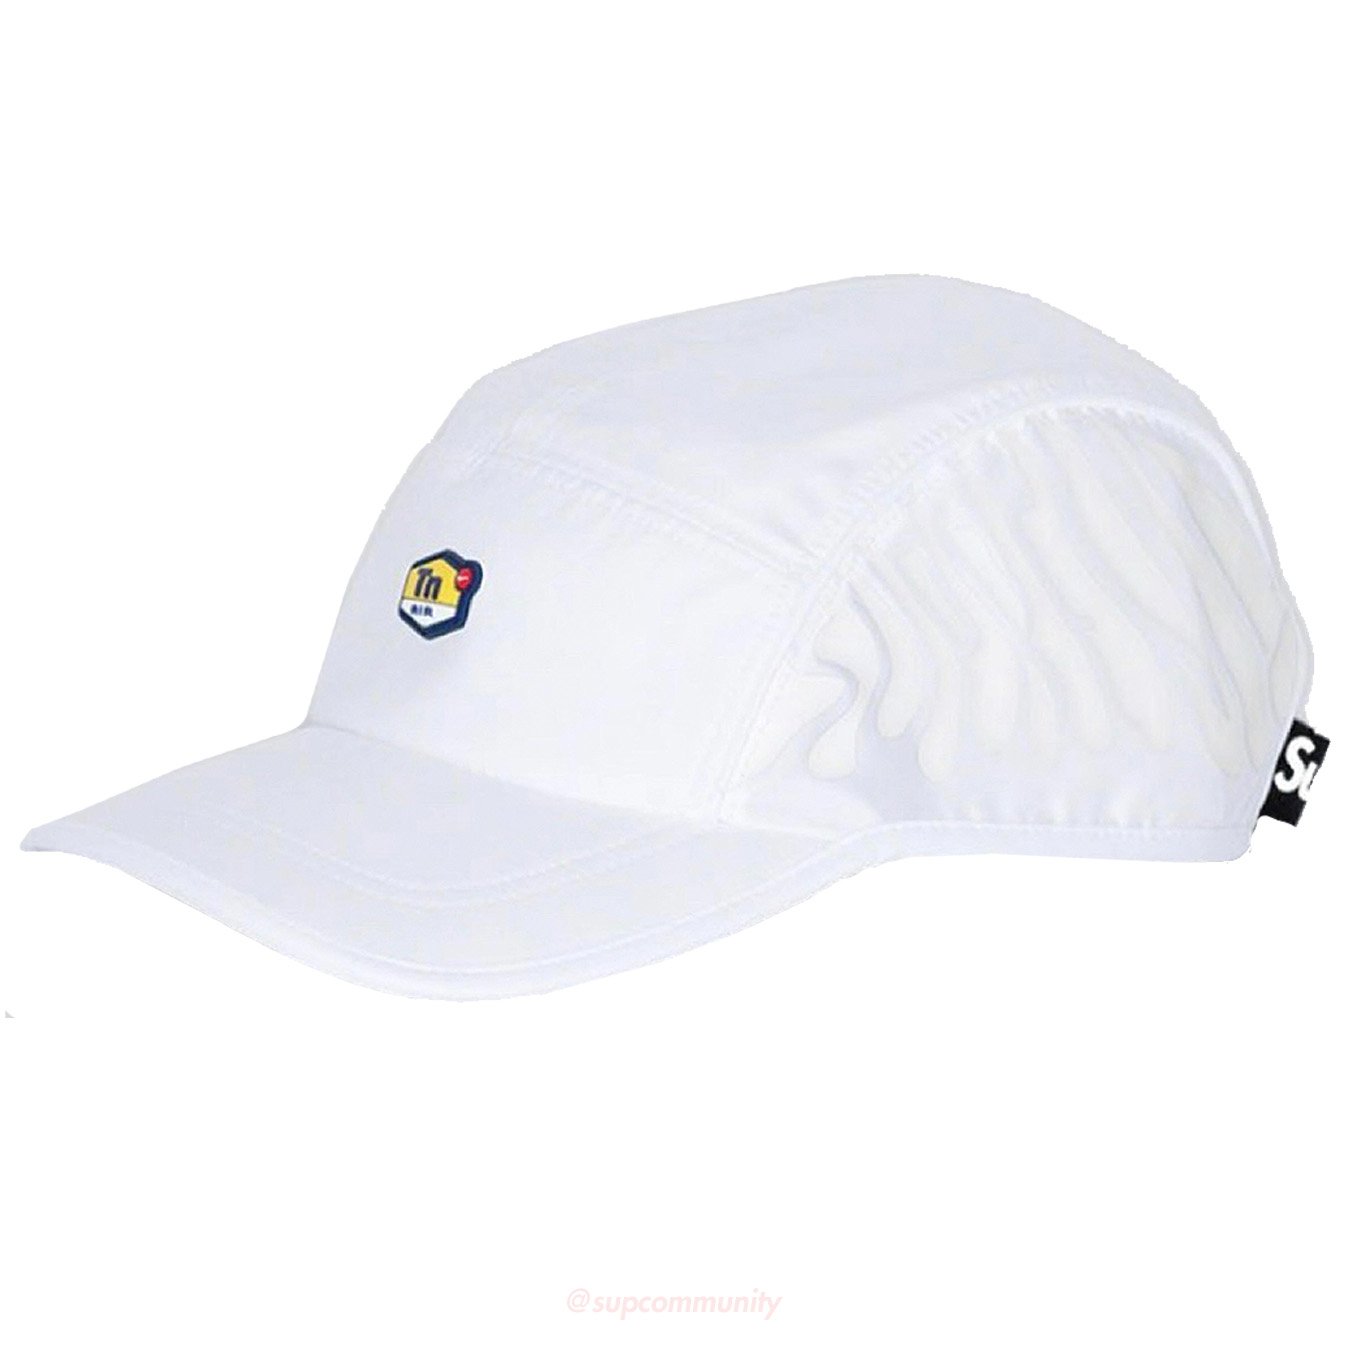 tn white hat